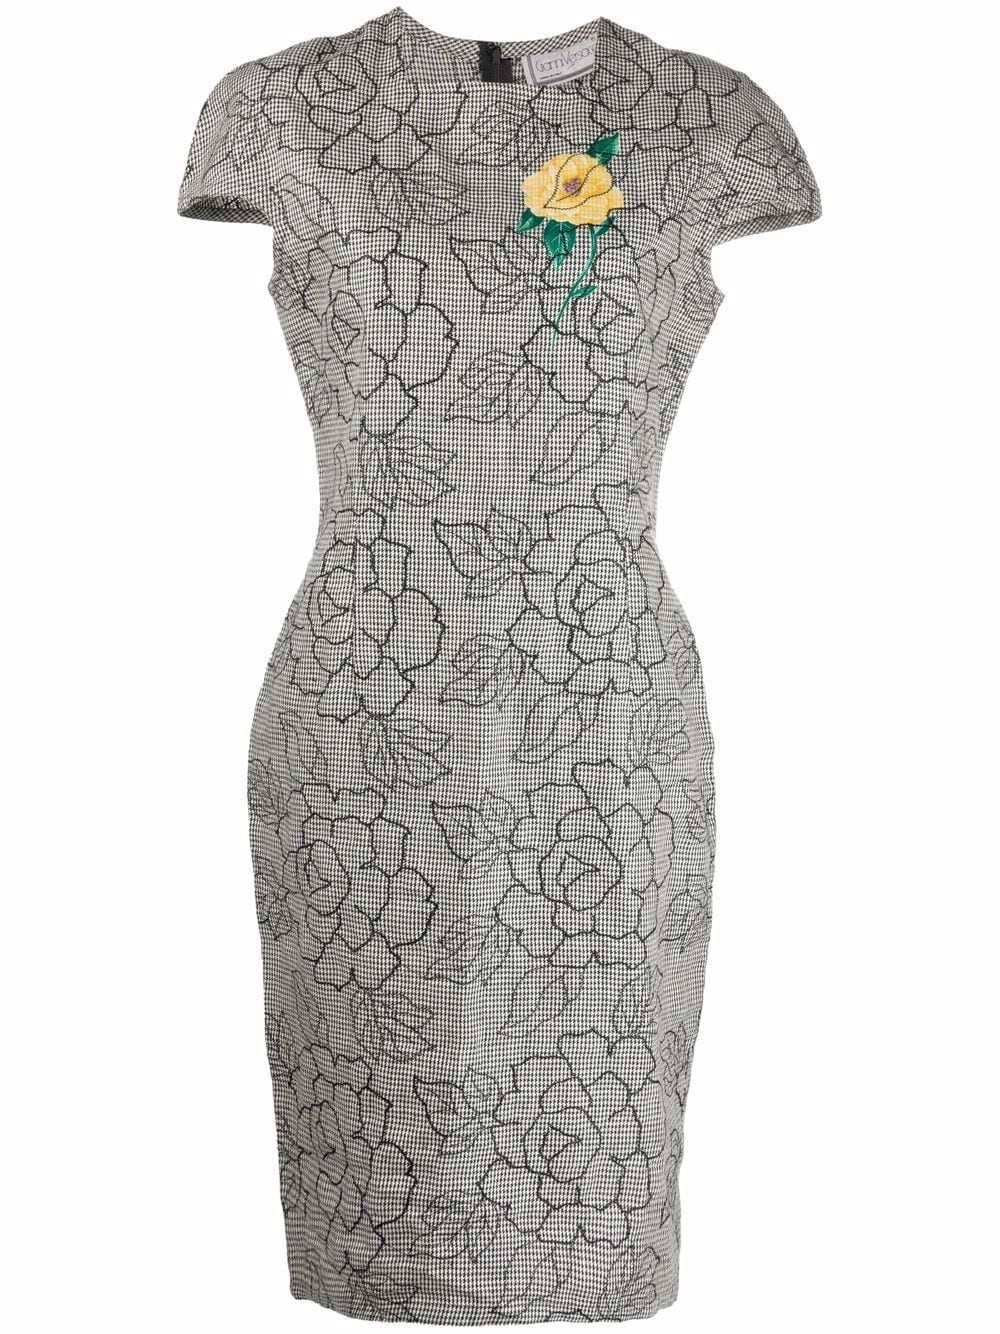 фото Versace pre-owned жаккардовое платье с цветочным узором